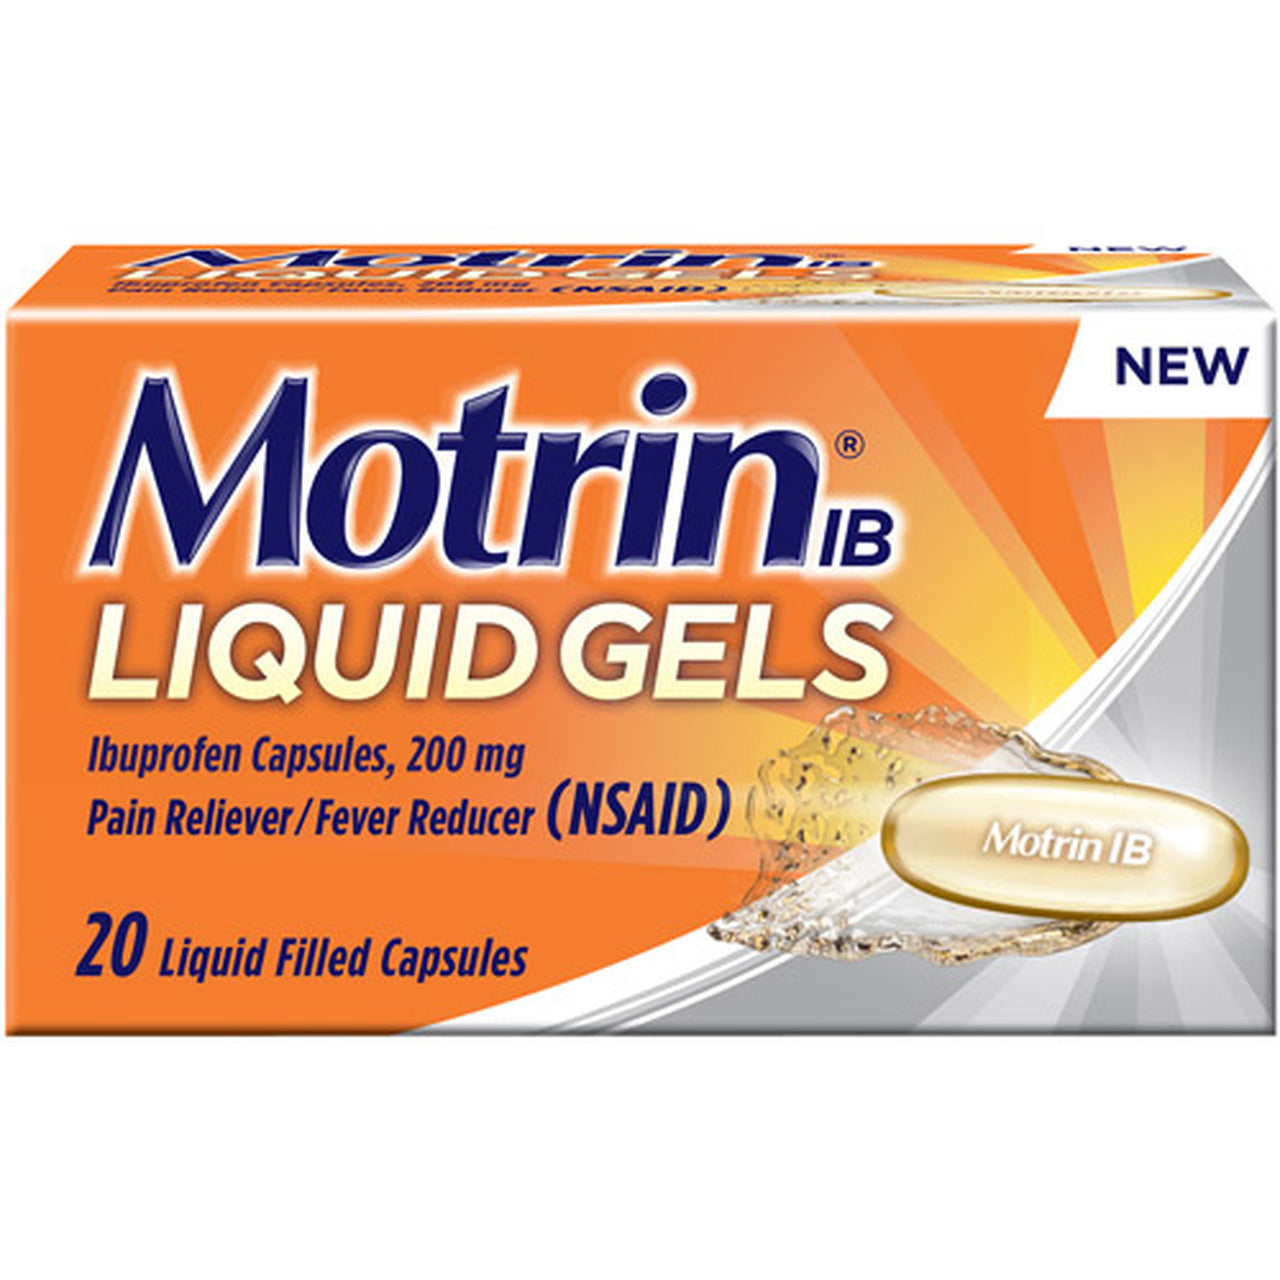 Motrin IB Pain Reliever / Fever Reducer Liquid Gels Liquid Filled Capsules - 20ct/24pk